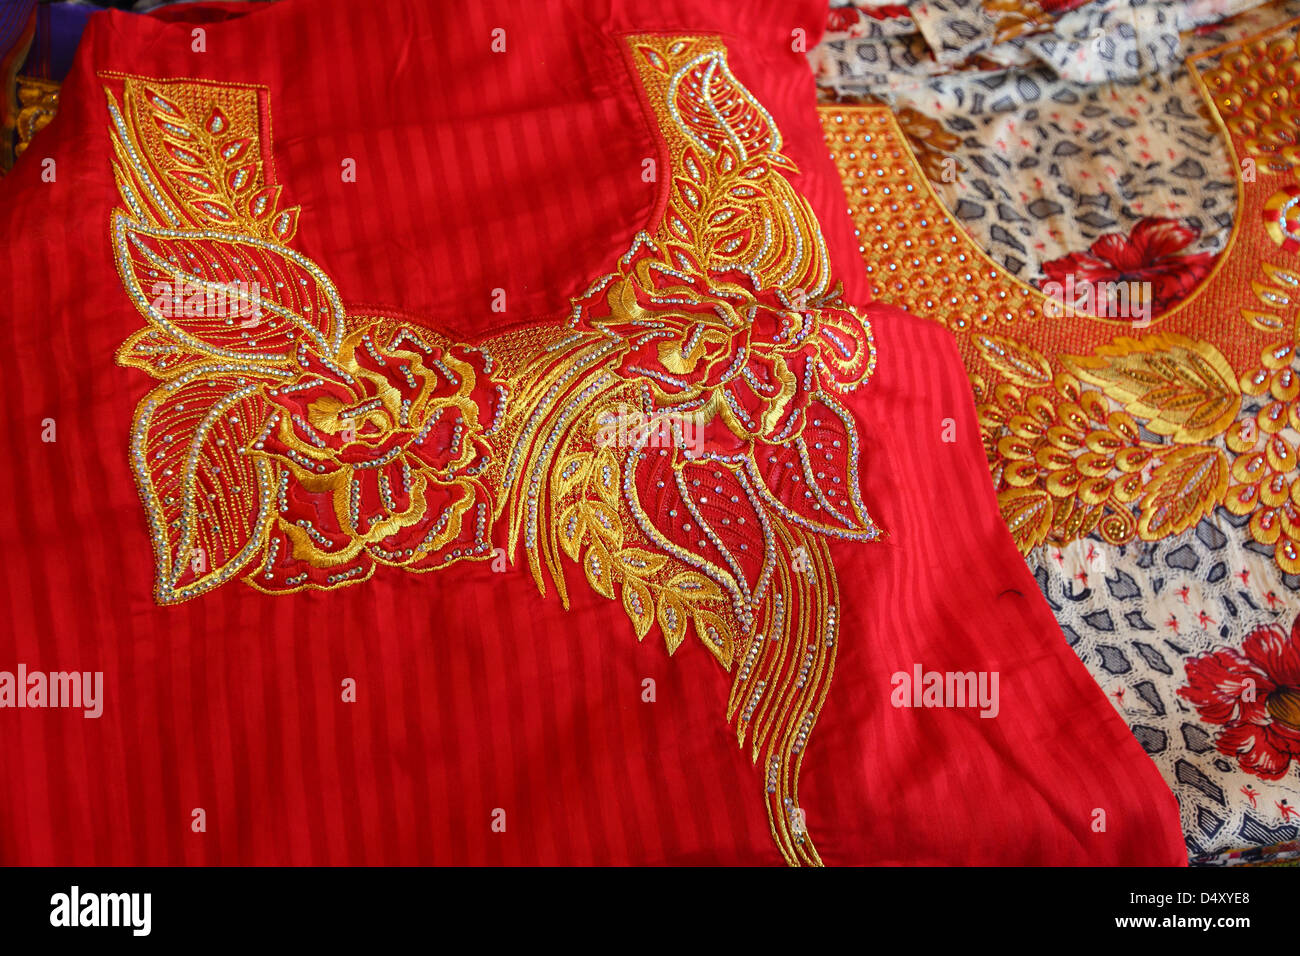 Closeup of textile embroidery, Dubai, United Arab Emirates Stock Photo